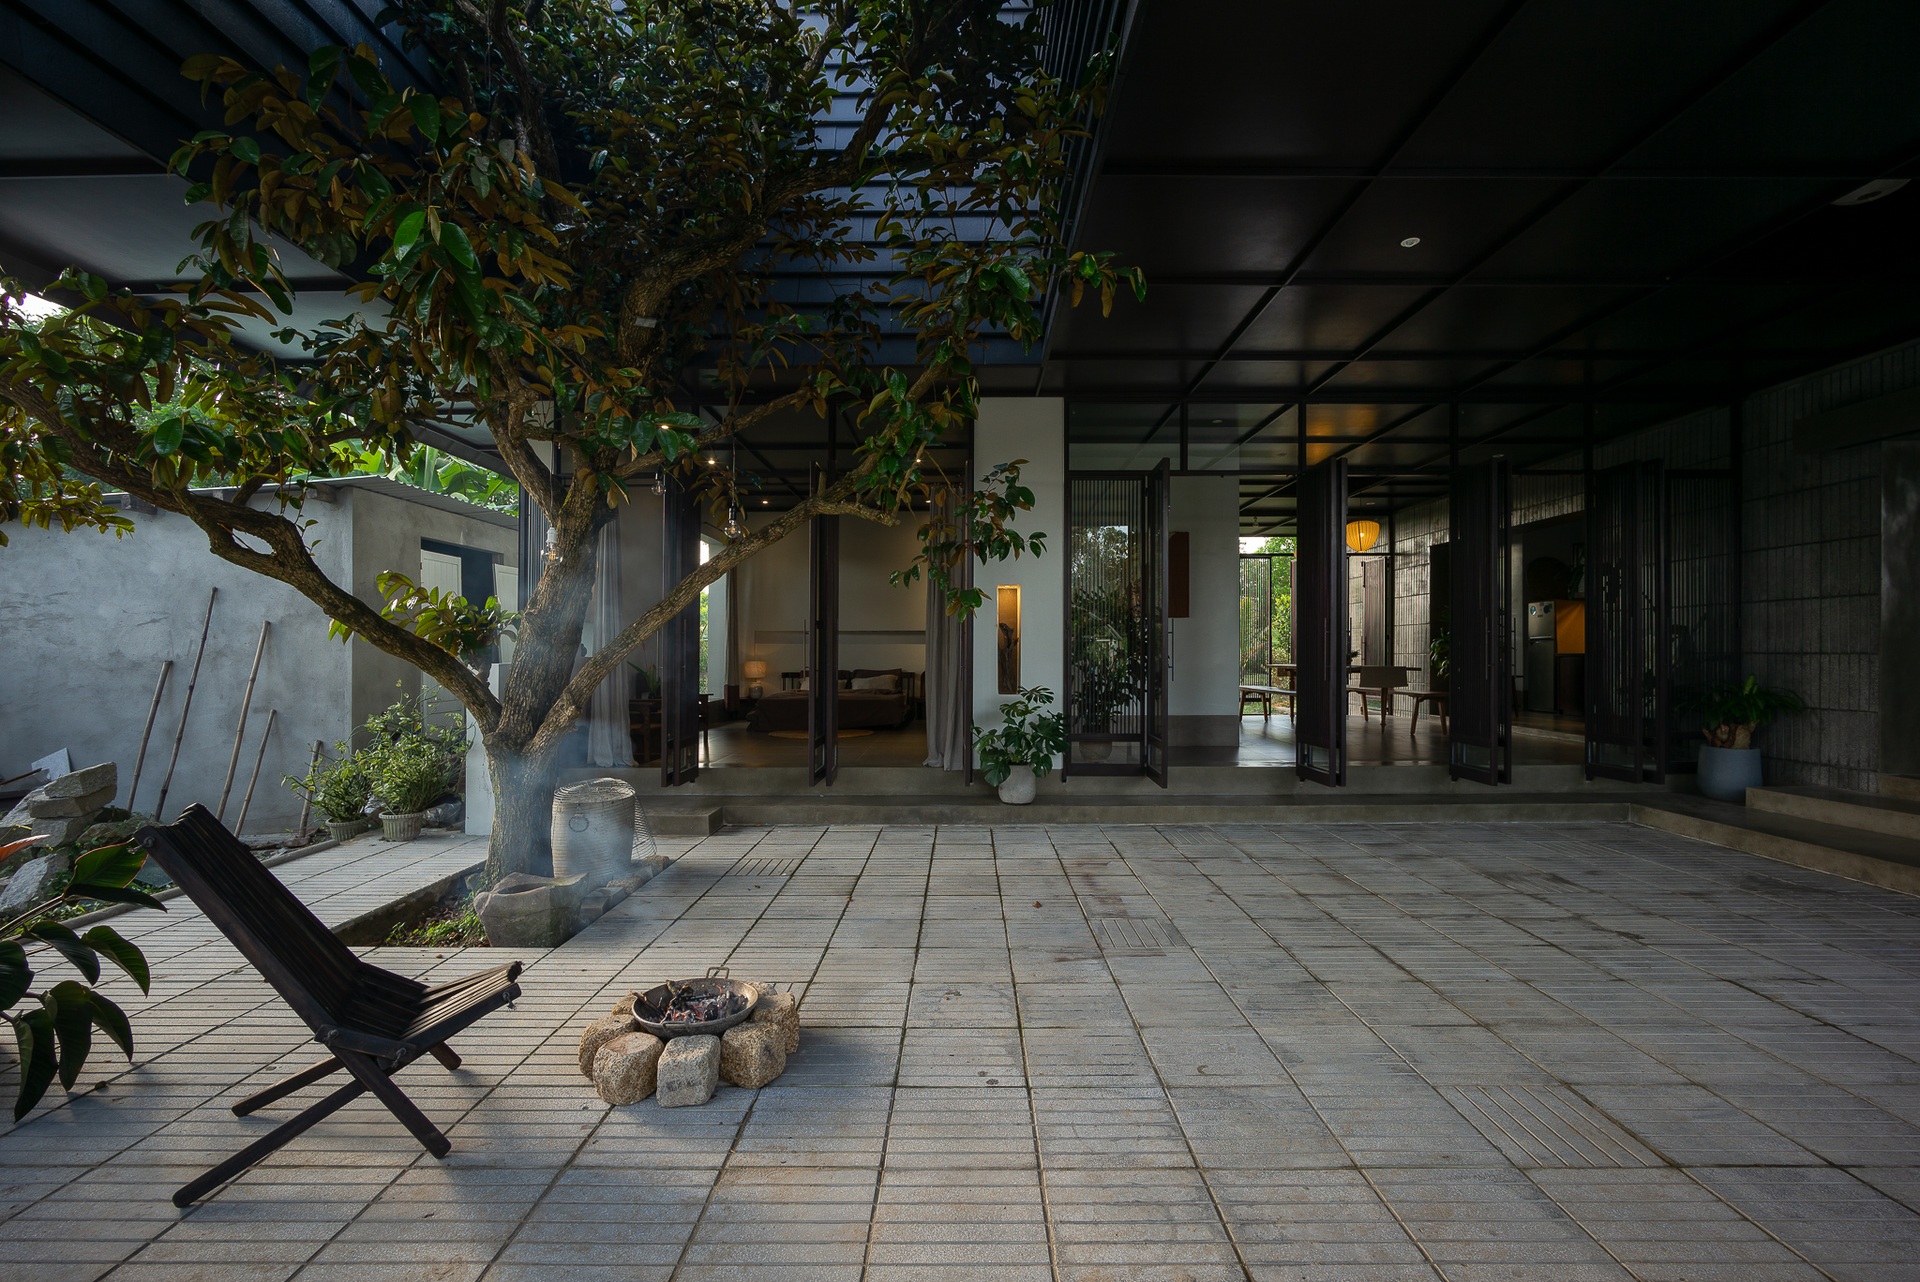 Căn biệt thự nhà vườn tiện nghi nằm giữa rừng keo xanh mướt tại Quảng Nam